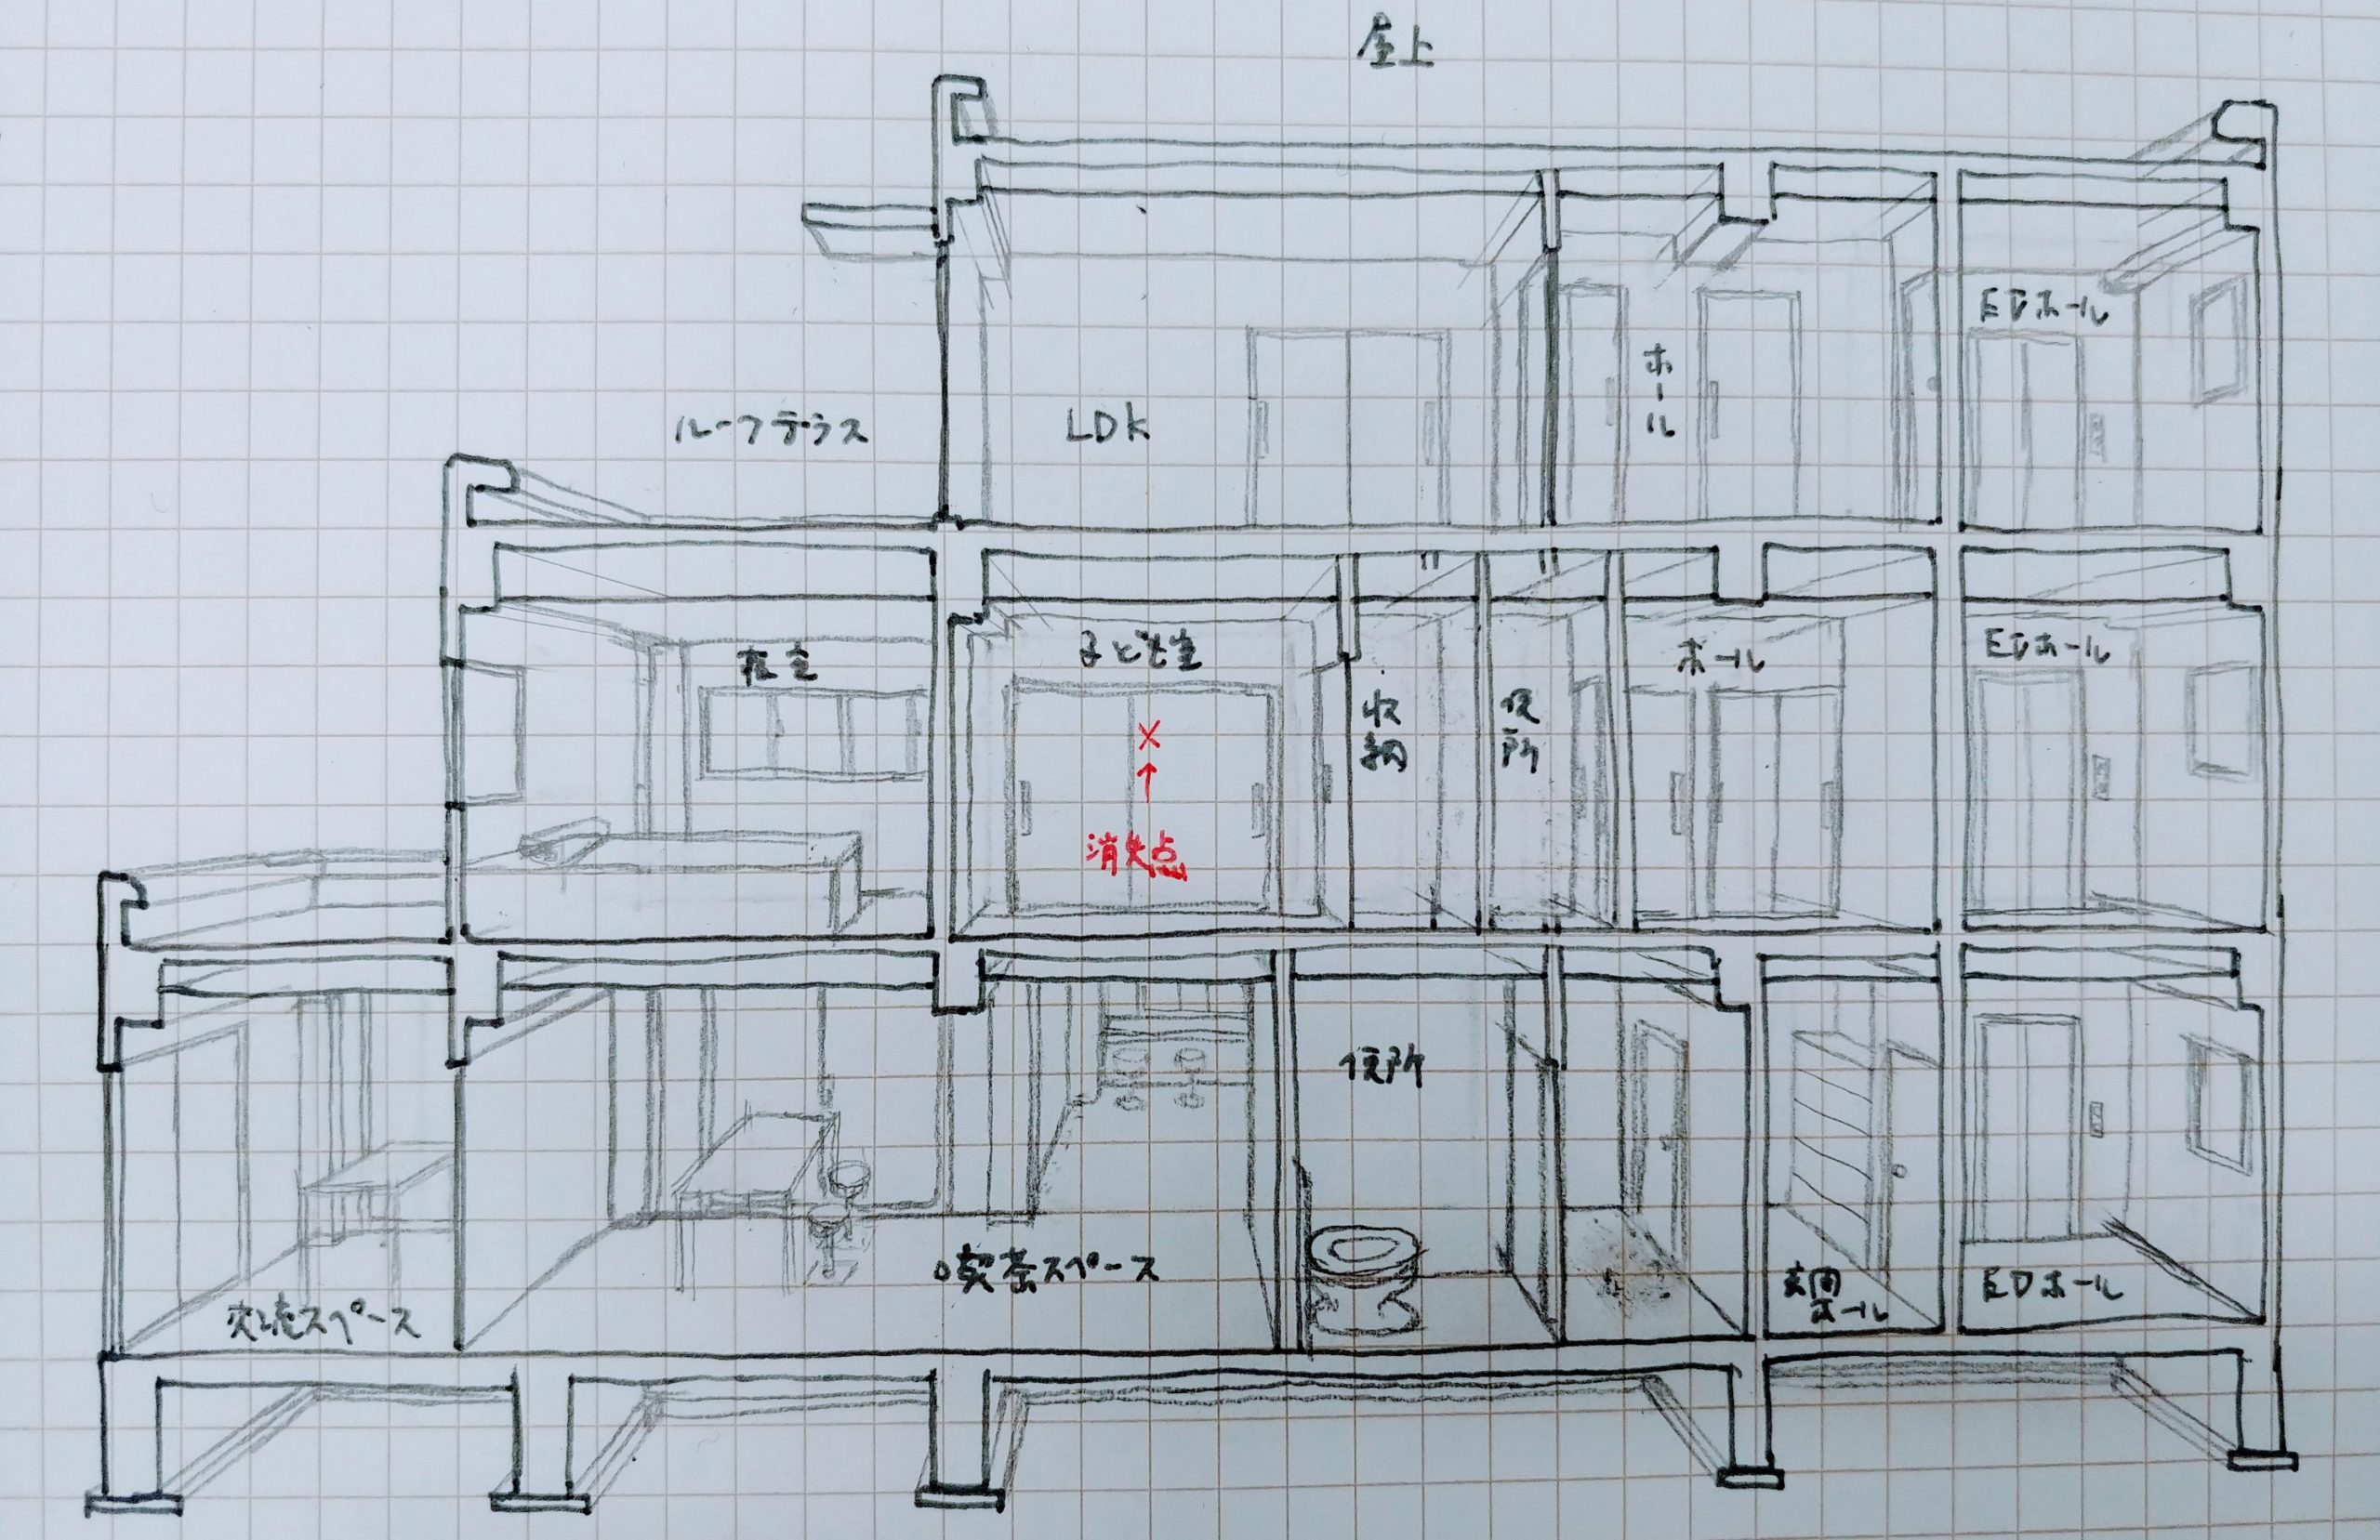 建築の手書き断面パースの書き方 一点透視図法で見せる 一級建築士への道